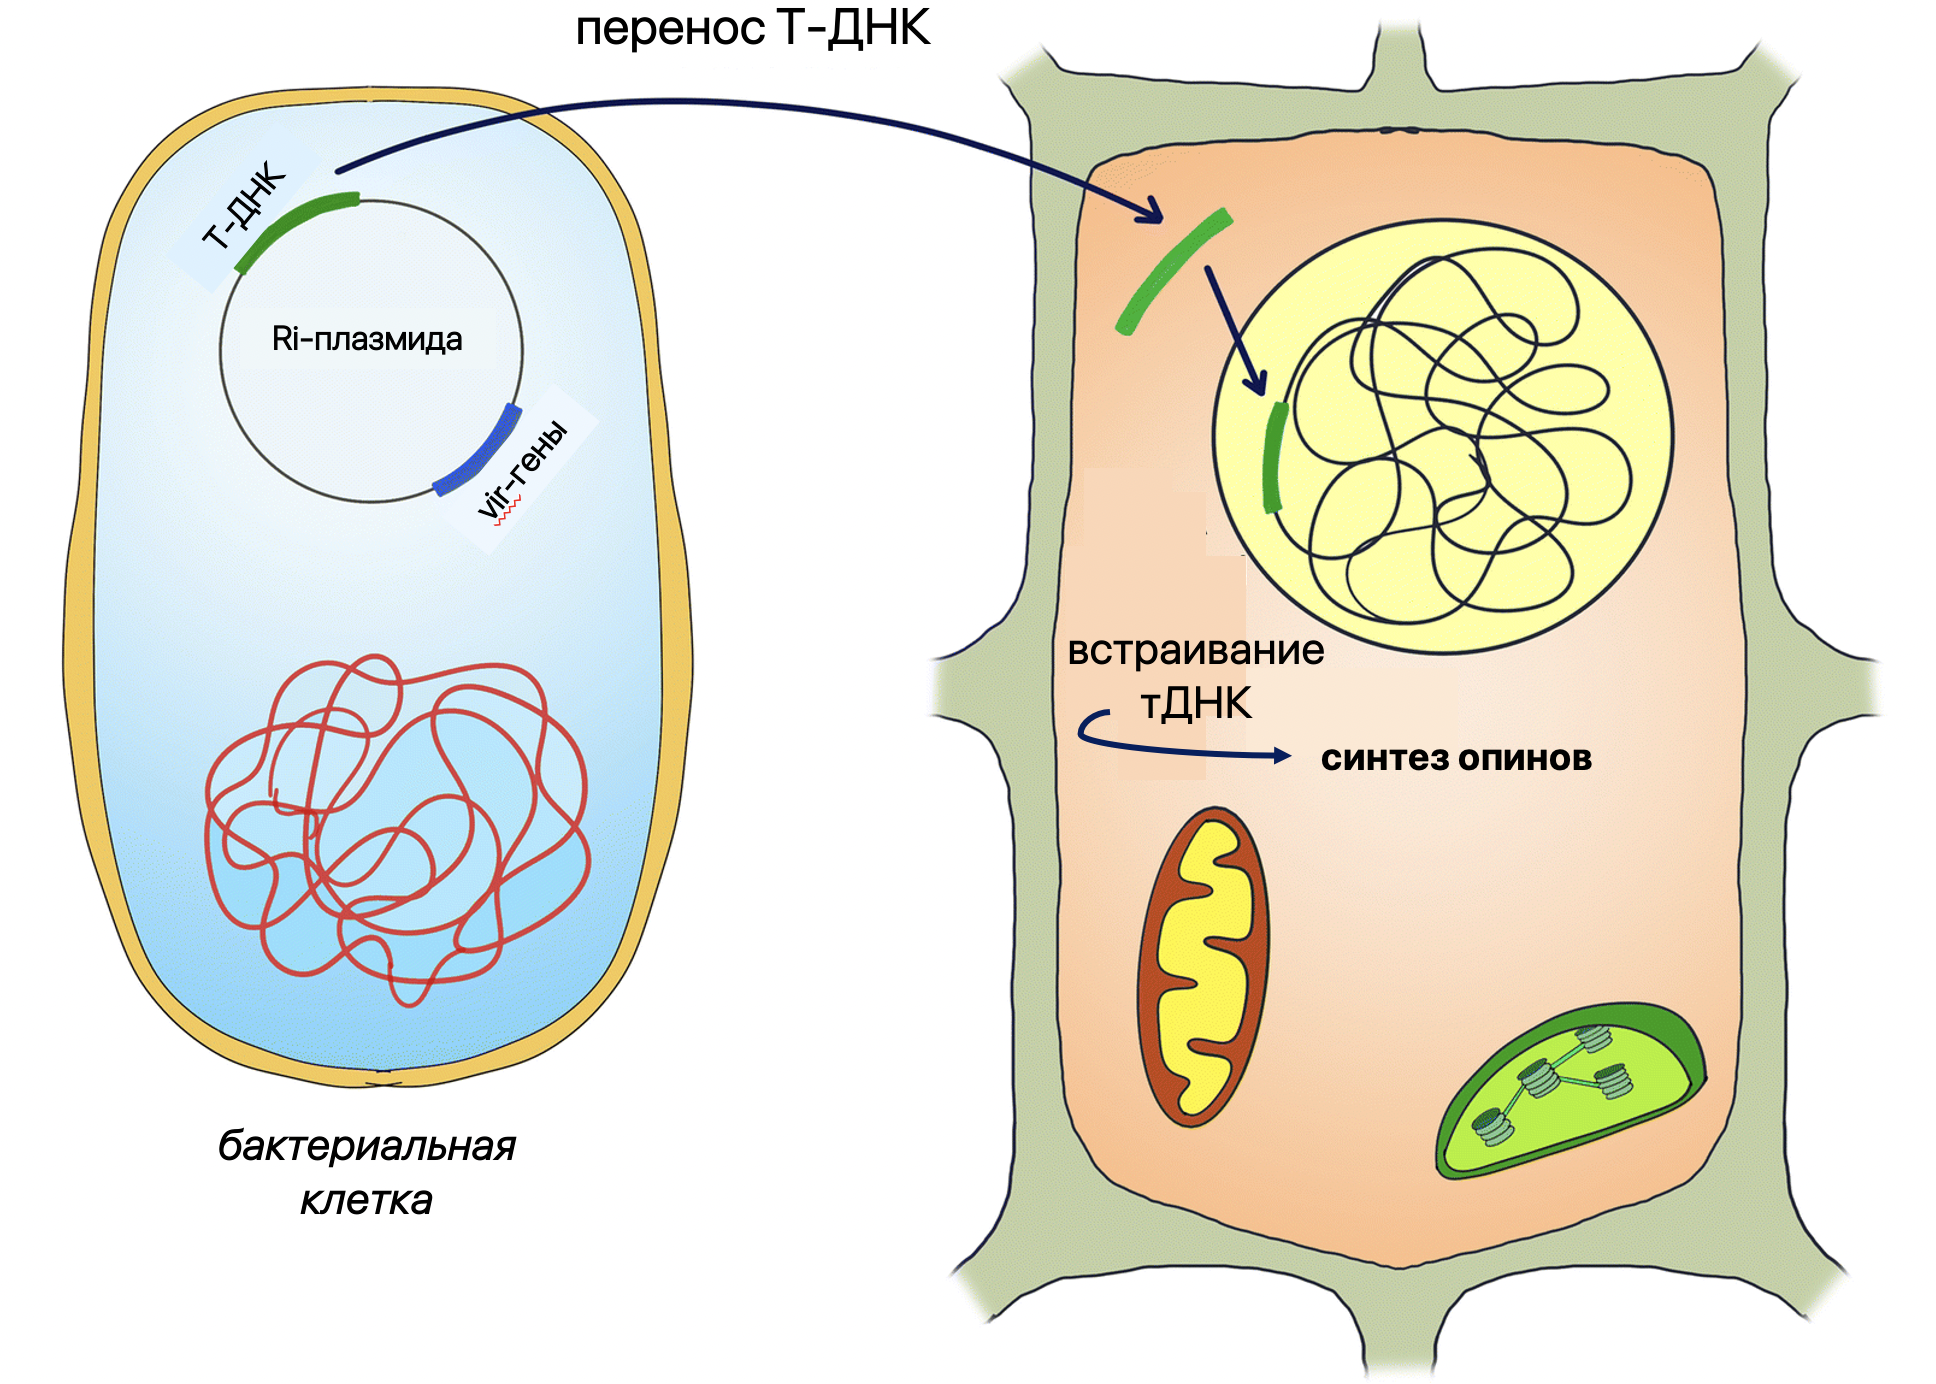 Схема клеточного механизма трансформации клетки растения-хозяина с помощью Agrobacterium rhizogenes 